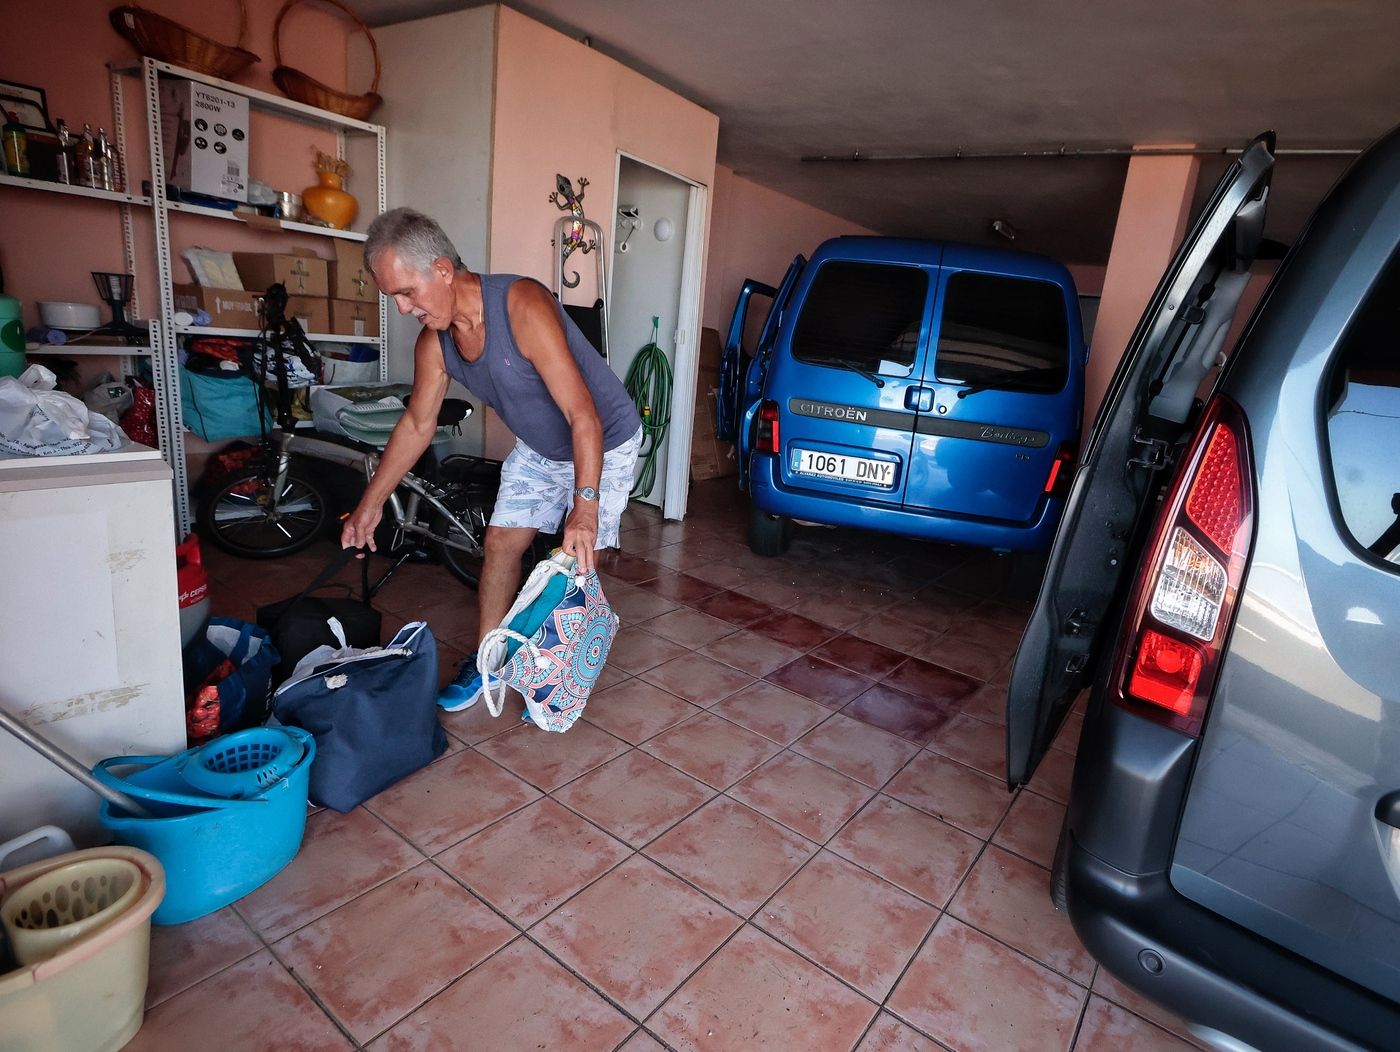 Los desalojados por la reactivación del incendio de Tenerife regresan a sus casas